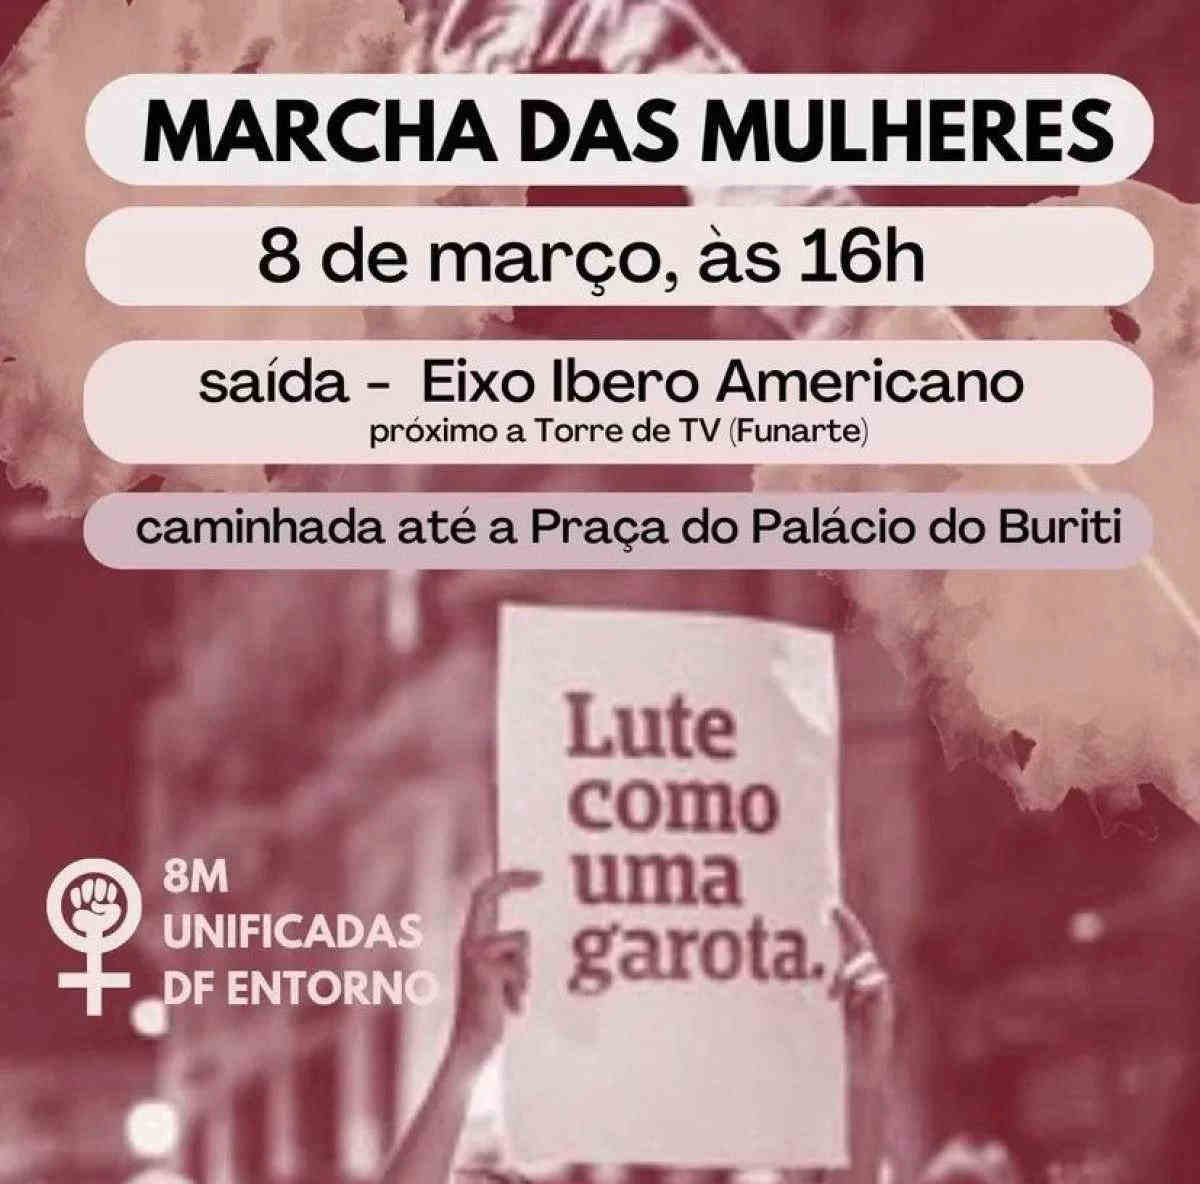 Marcha das Mulheres é "aposta na reconstrução do Brasil", diz ativista do Cfemea